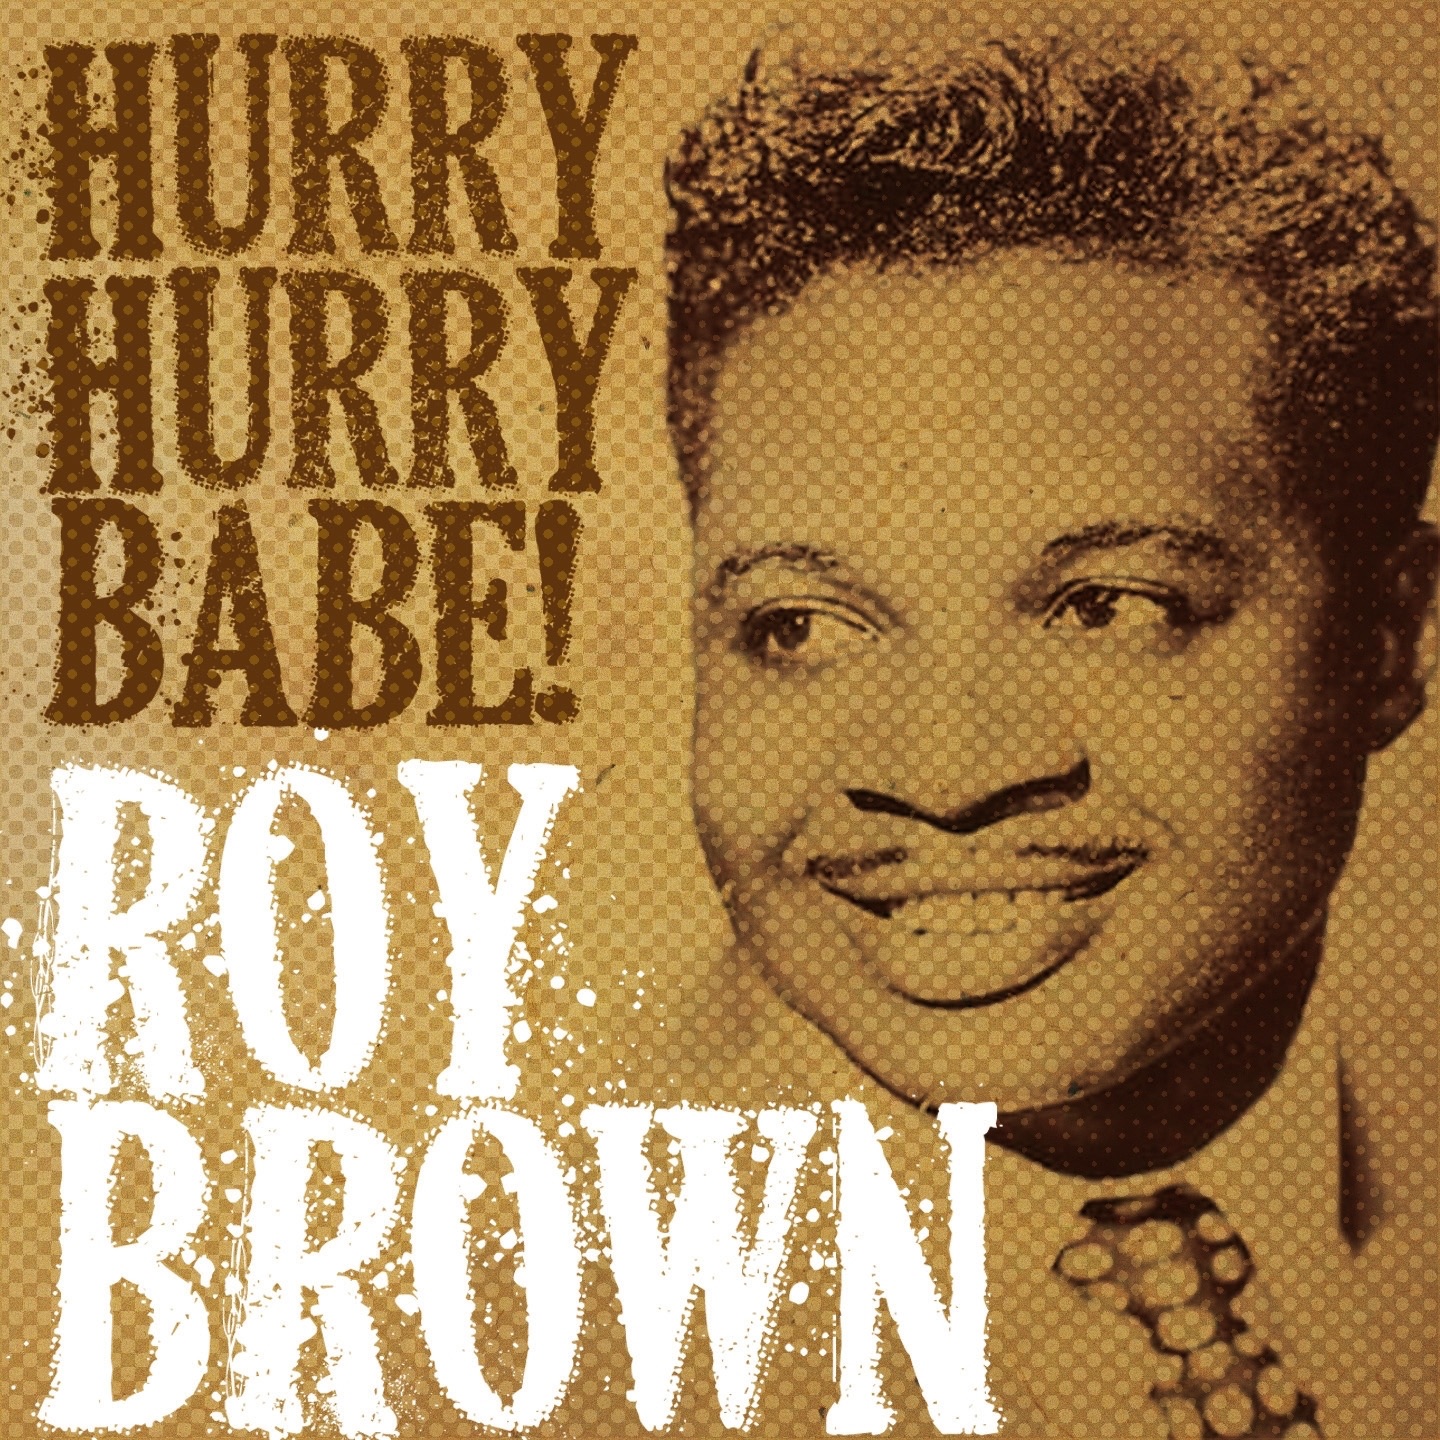 von <b>Roy Brown</b> in iTunes - 1440x1440sr